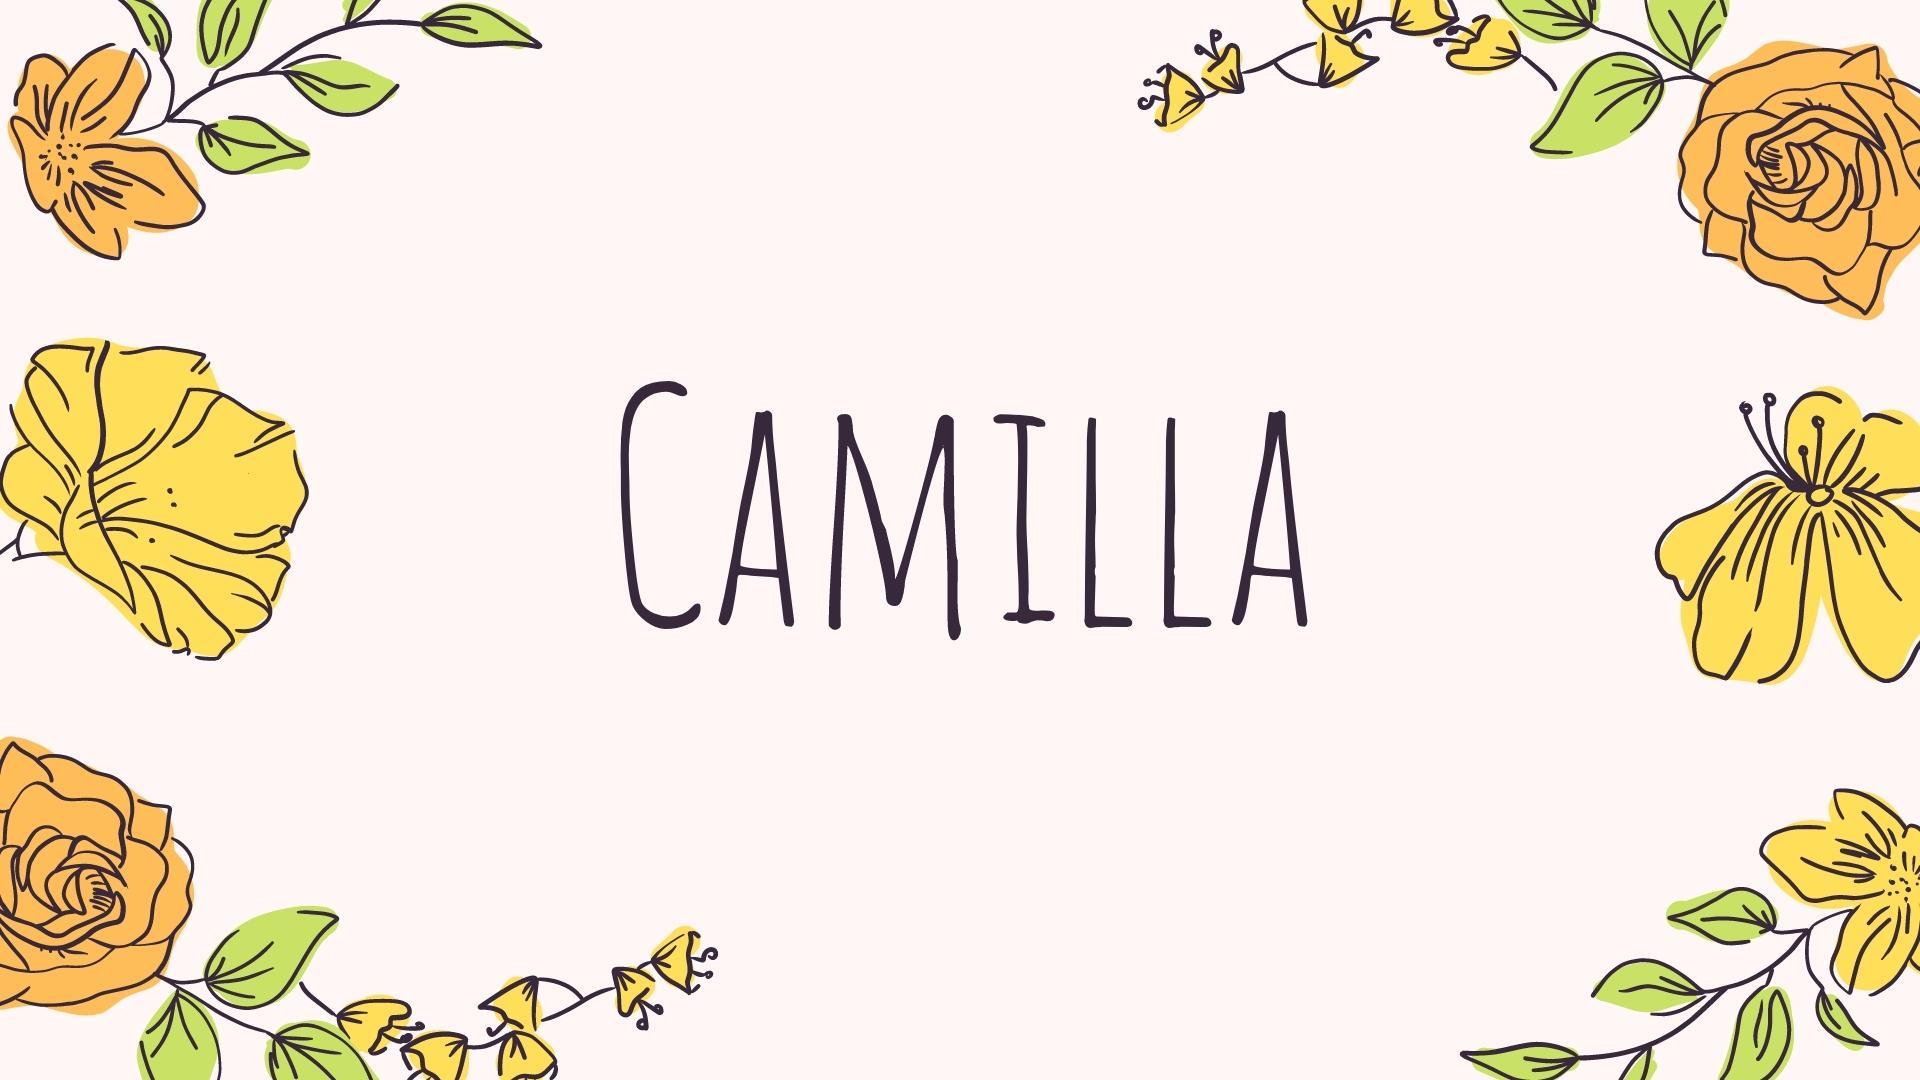 Camille: significato del nome, curiosità, onomastico